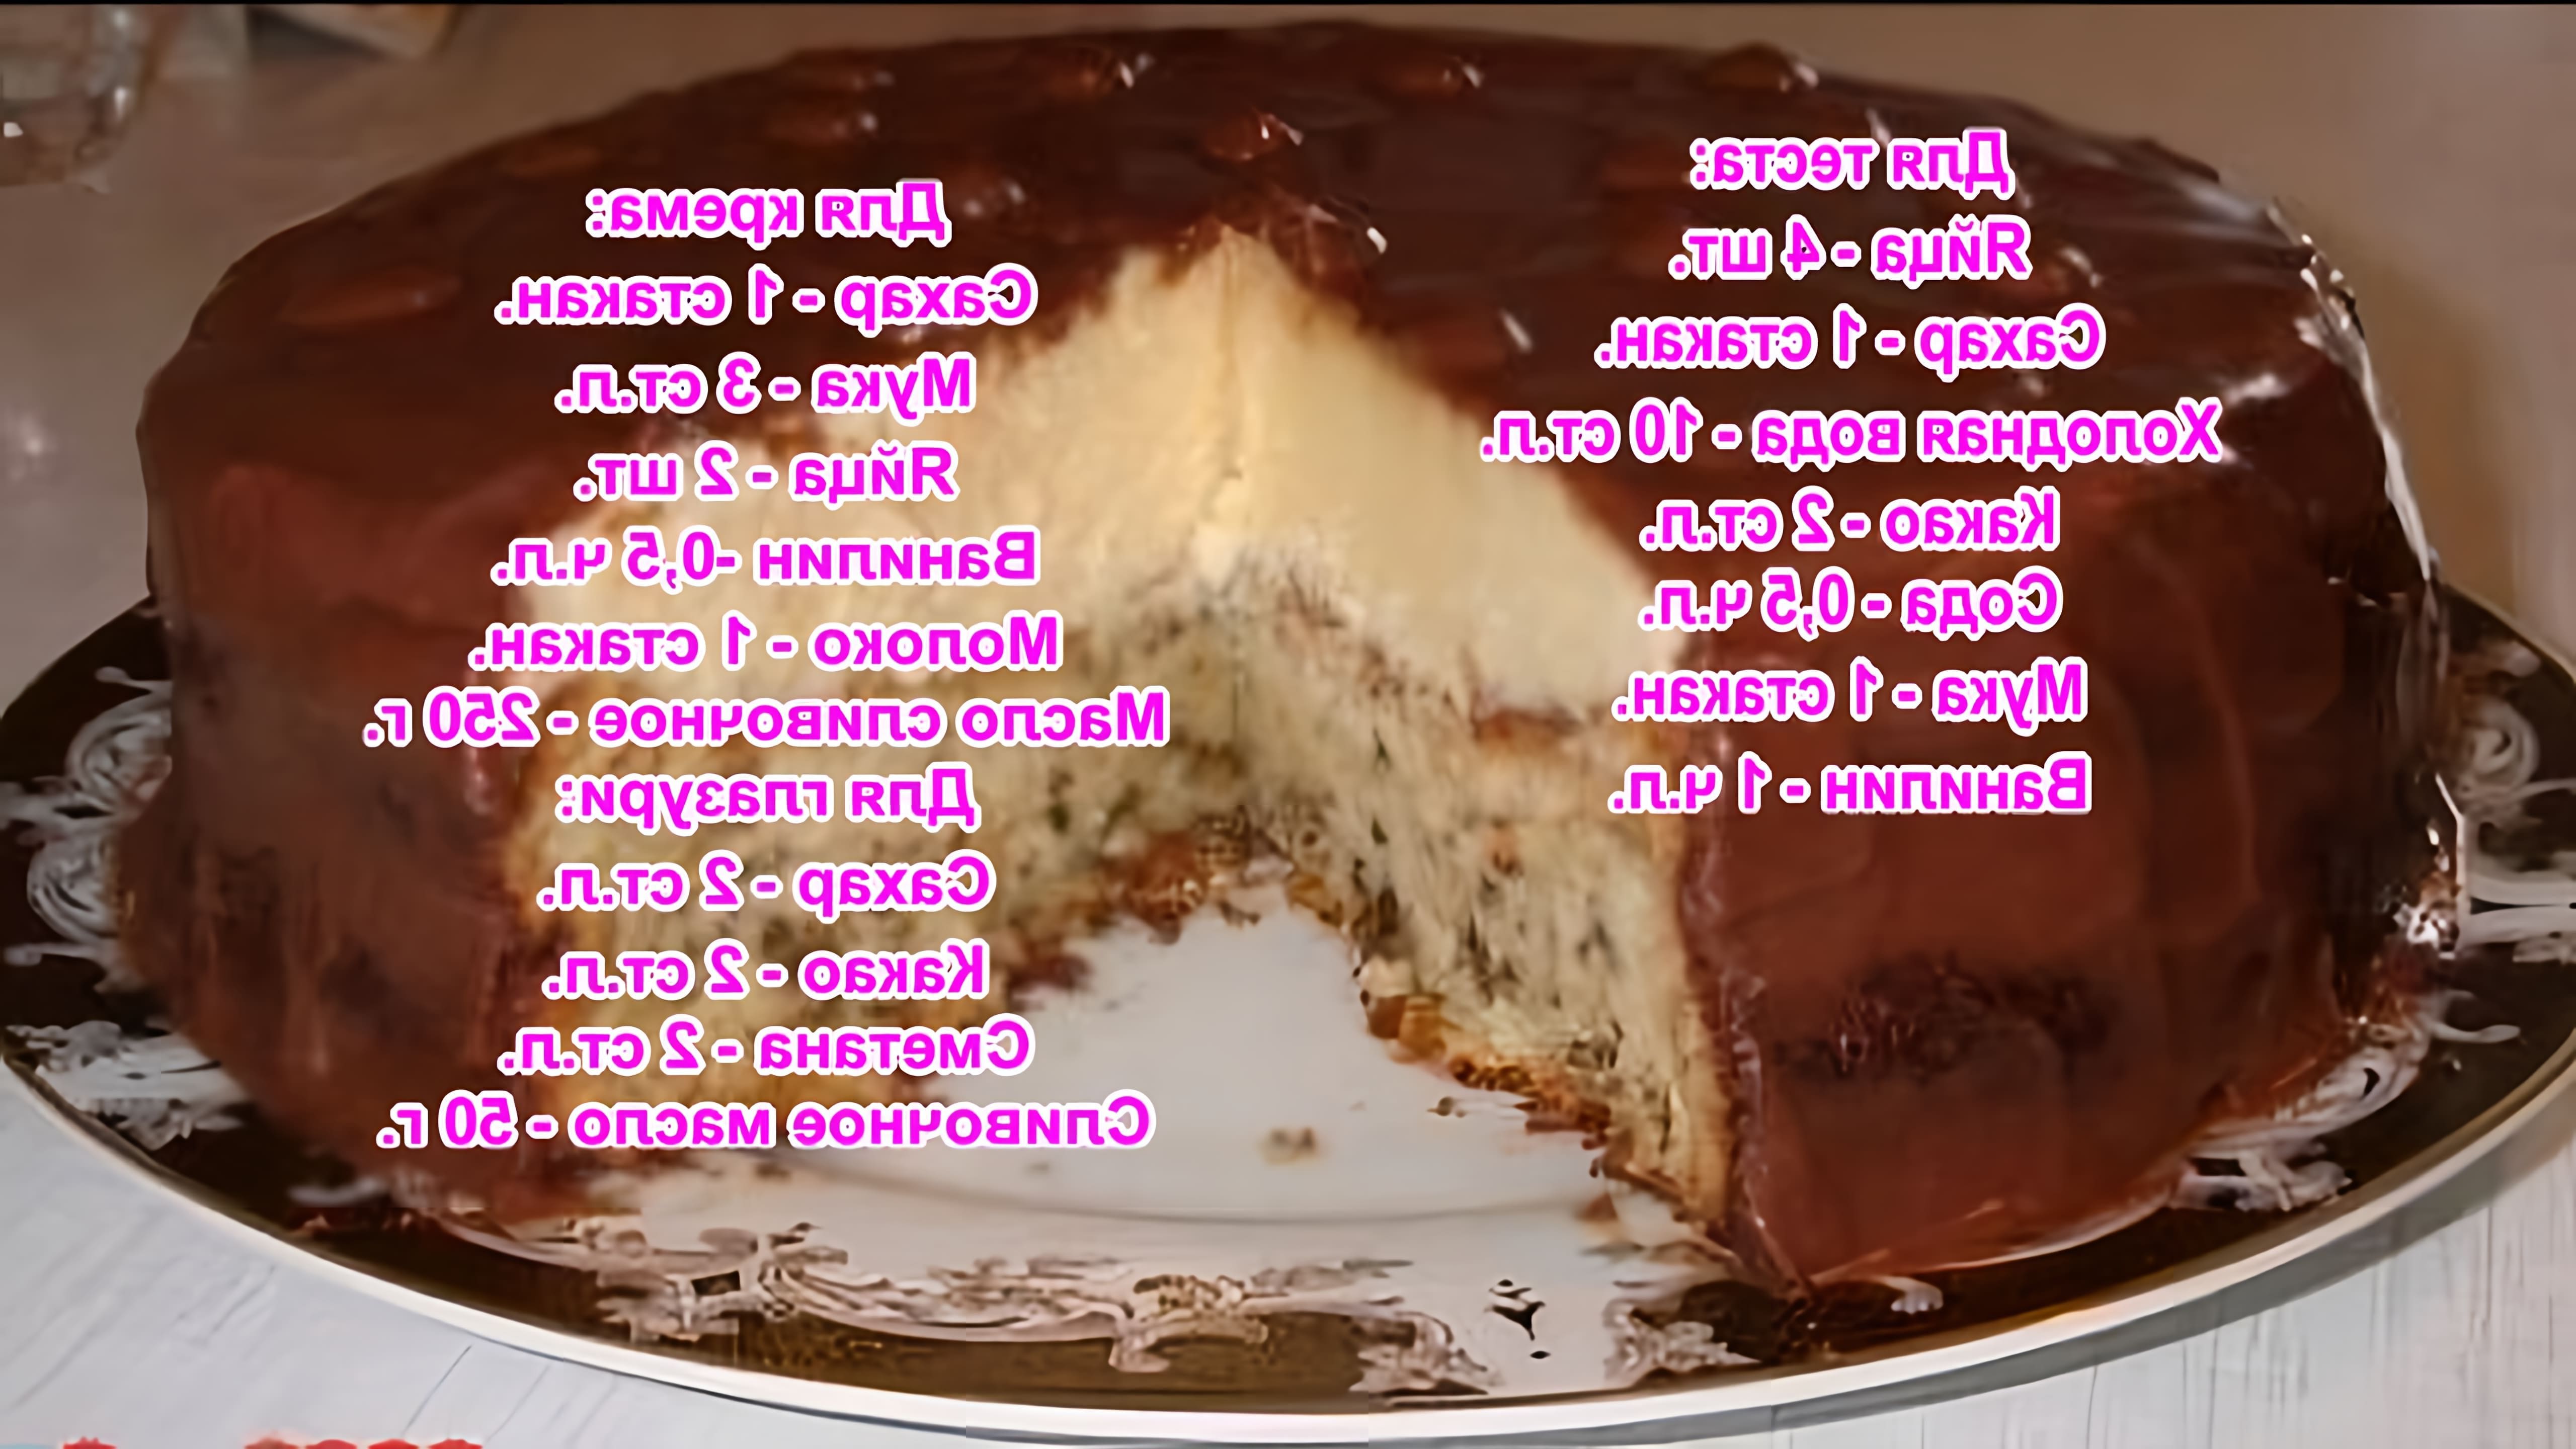 В этом видео демонстрируется рецепт приготовления торта "Эскимо"